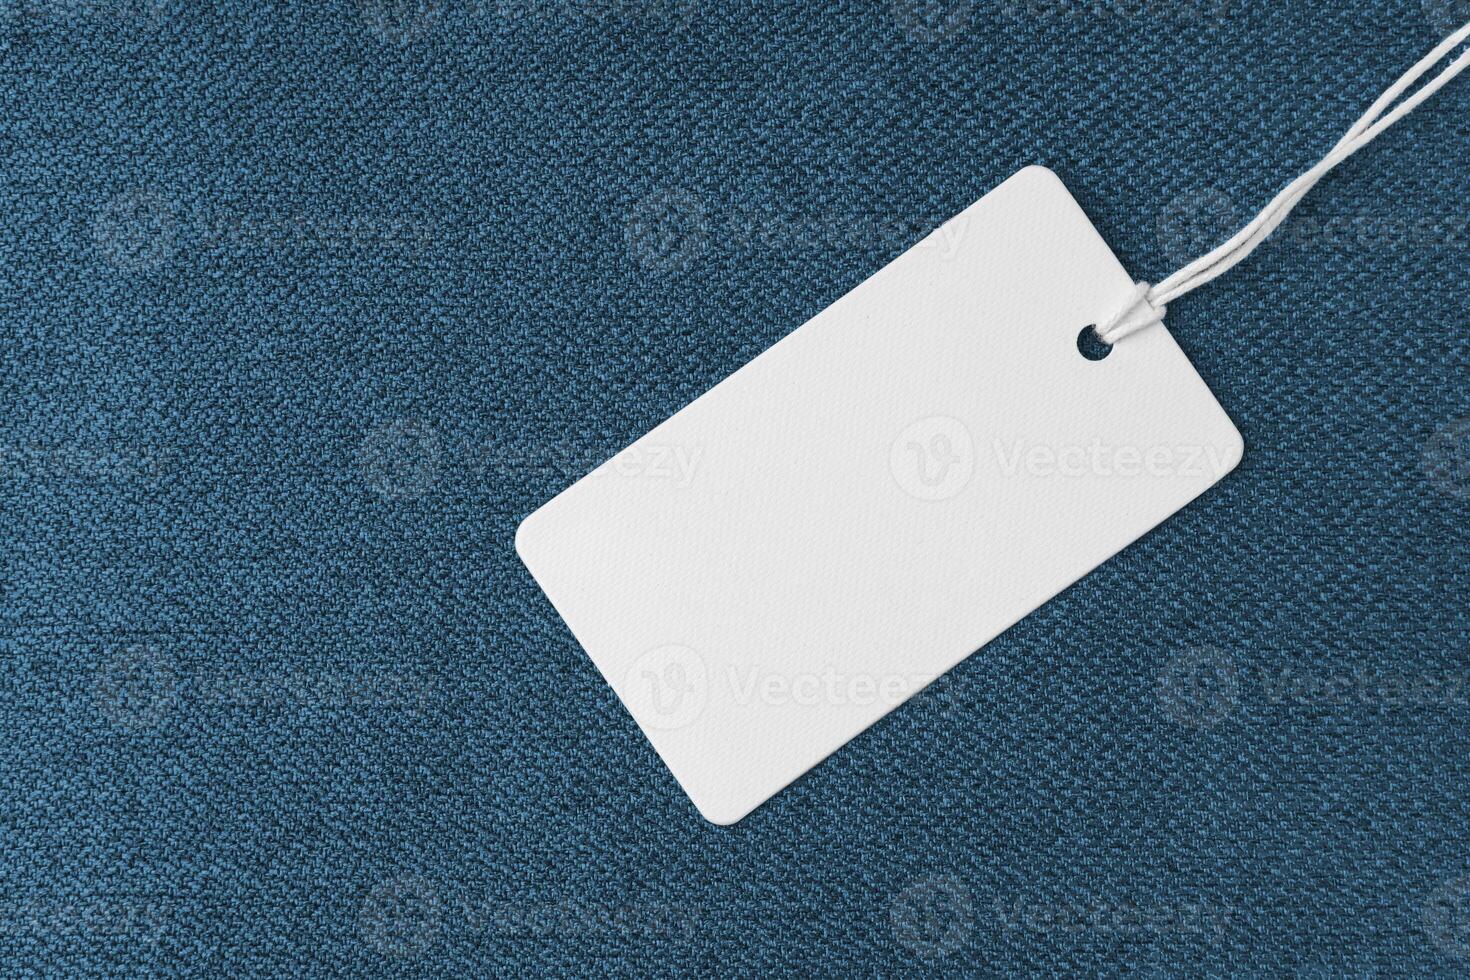 Textil- Hintergrund, Blau grob Stoff Textur mit Weiß leeren Kleidung Etikett foto